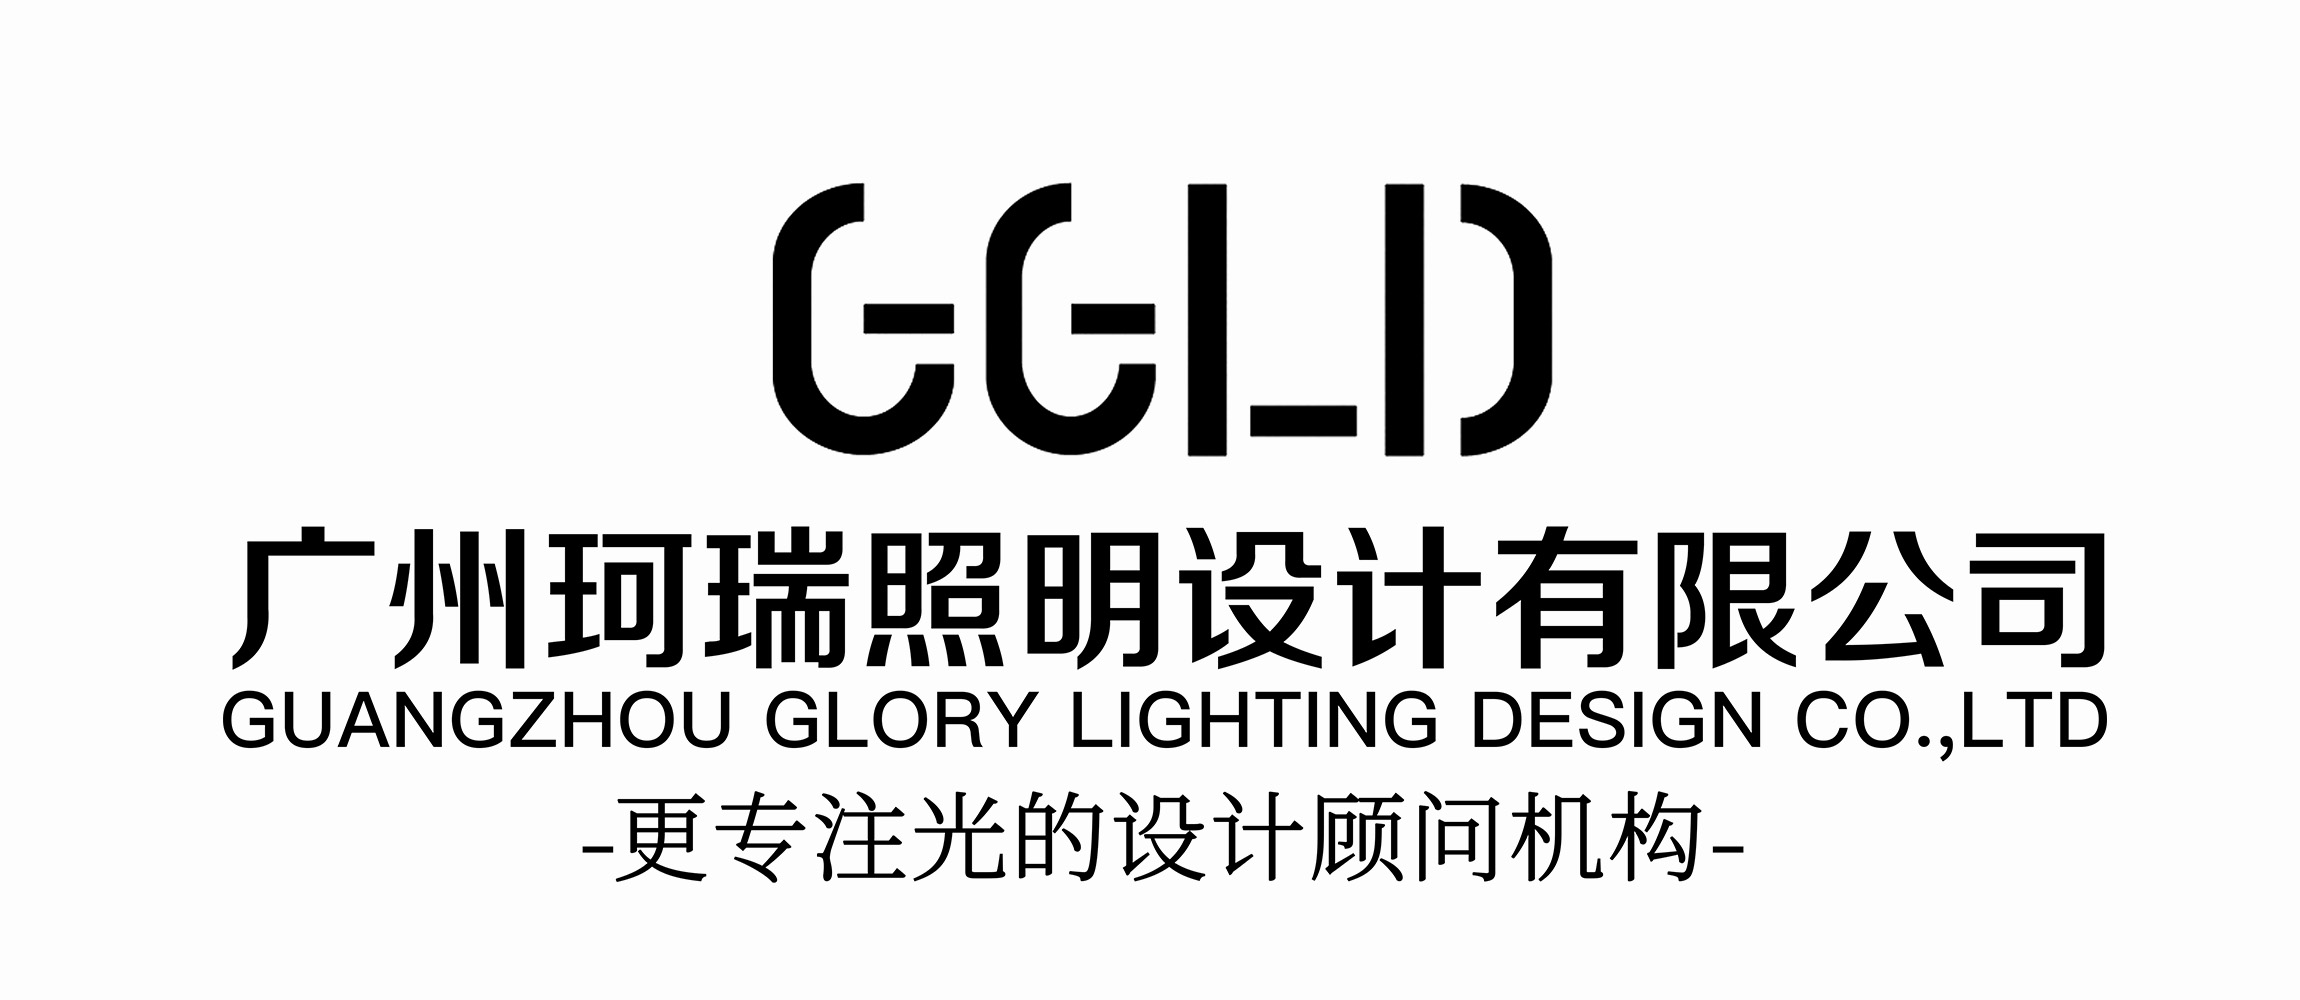 广州珂瑞照明设计有限公司